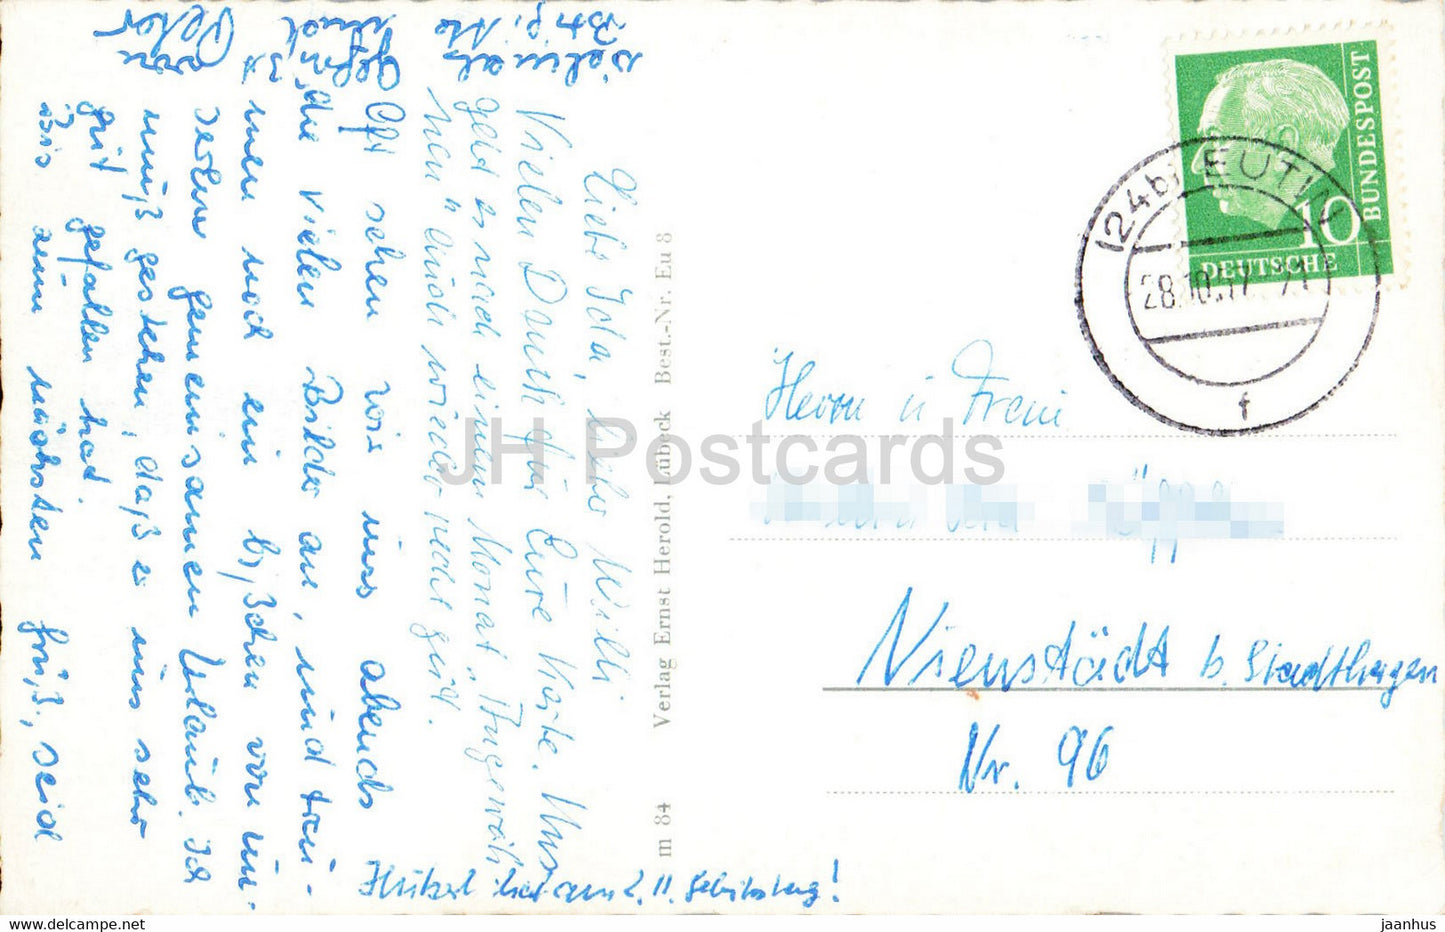 Gruss aus Eutin - Schloss - Markt - Rosengarten - alte Postkarte - 1957 - Deutschland - gebraucht